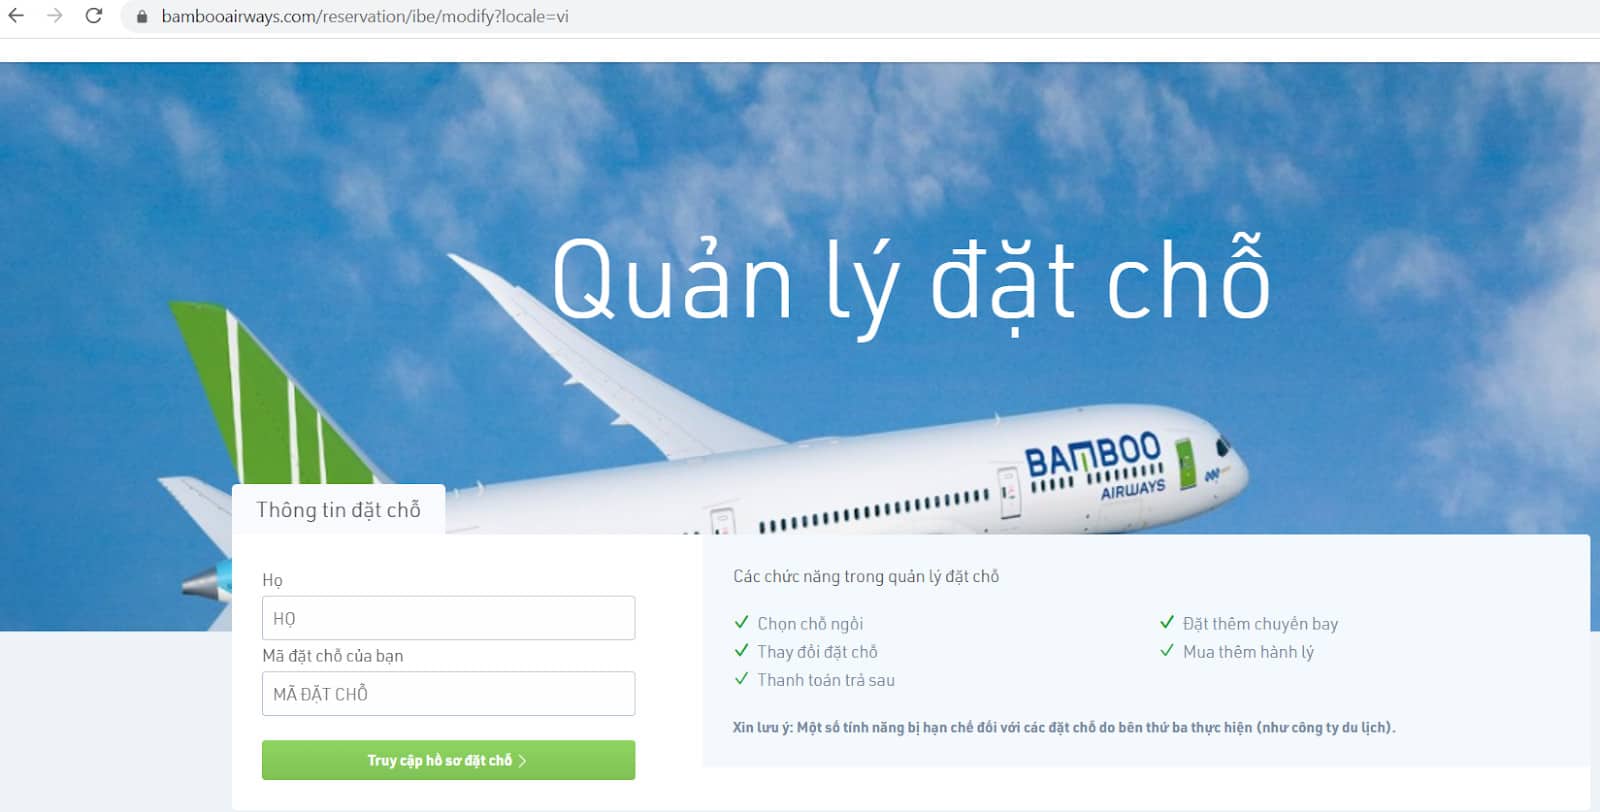 Hướng dẫn hoàn đổi vé Bamboo Airways - Quản lý đặt chỗ